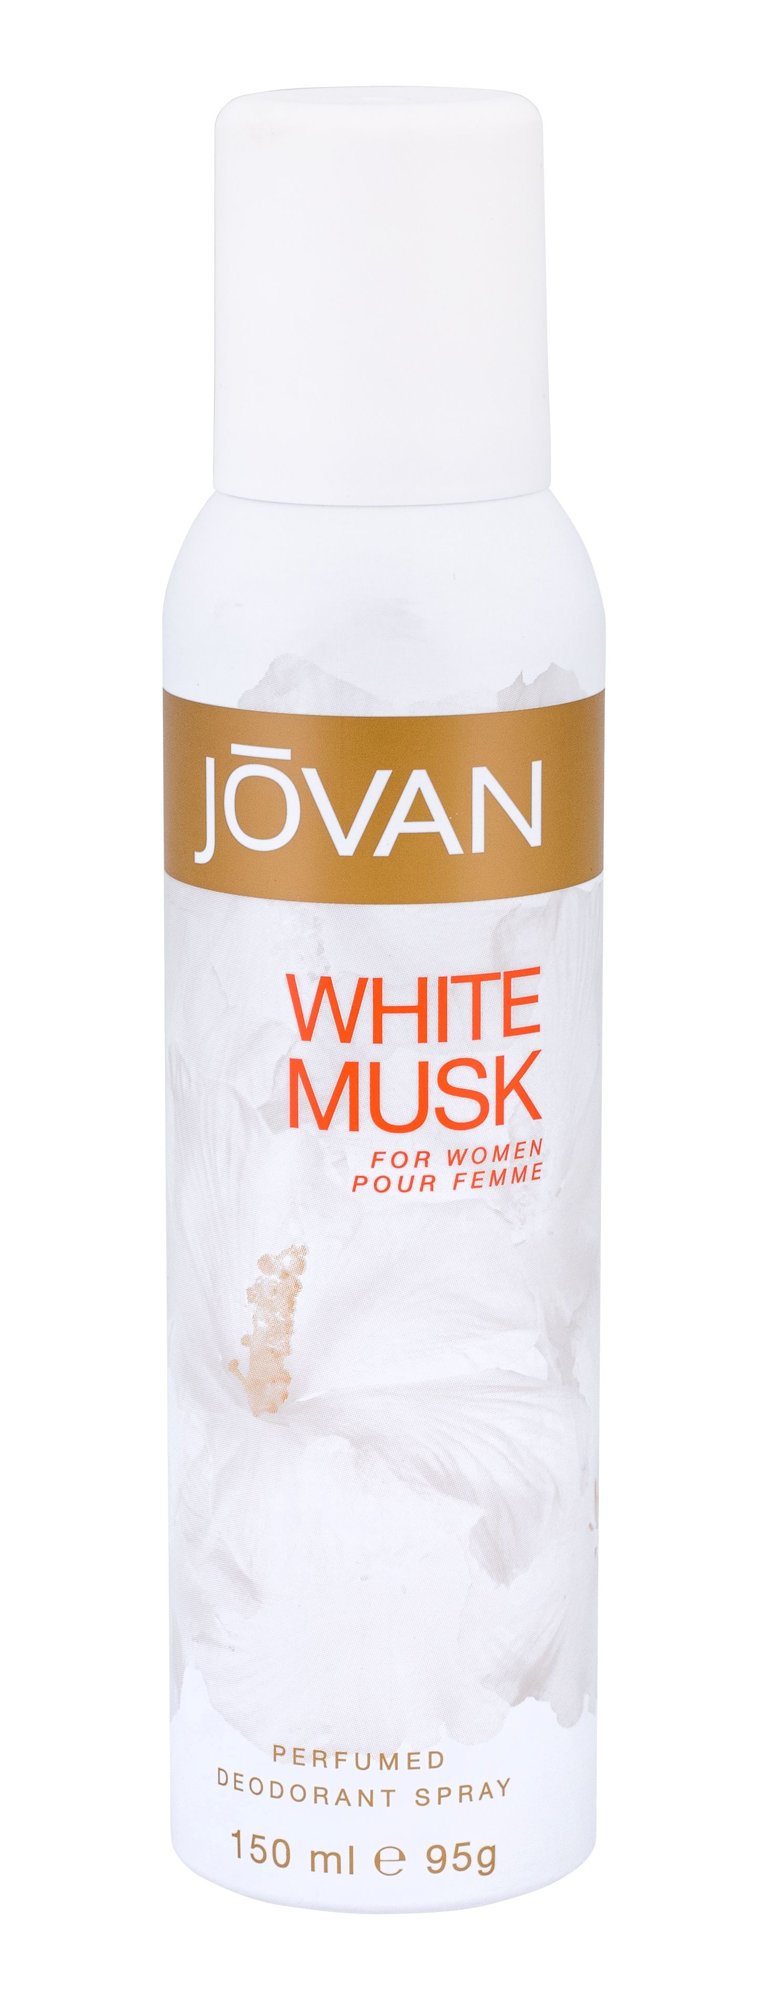 Jovan Musk White For Women